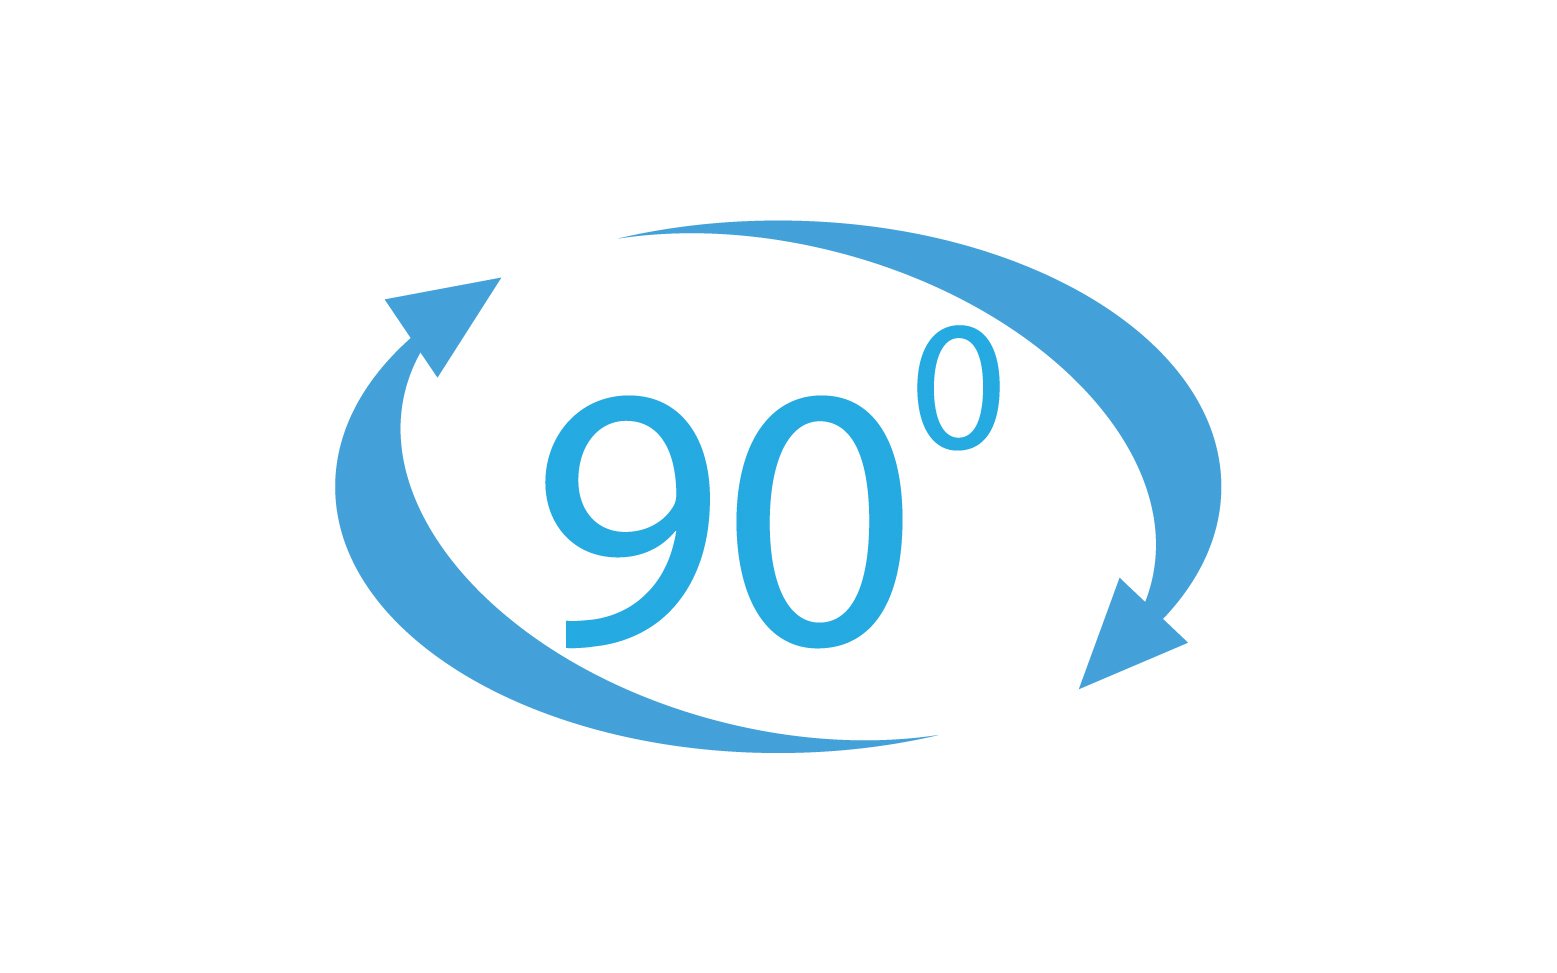 90 degree angle rotation icon symbol logo v16